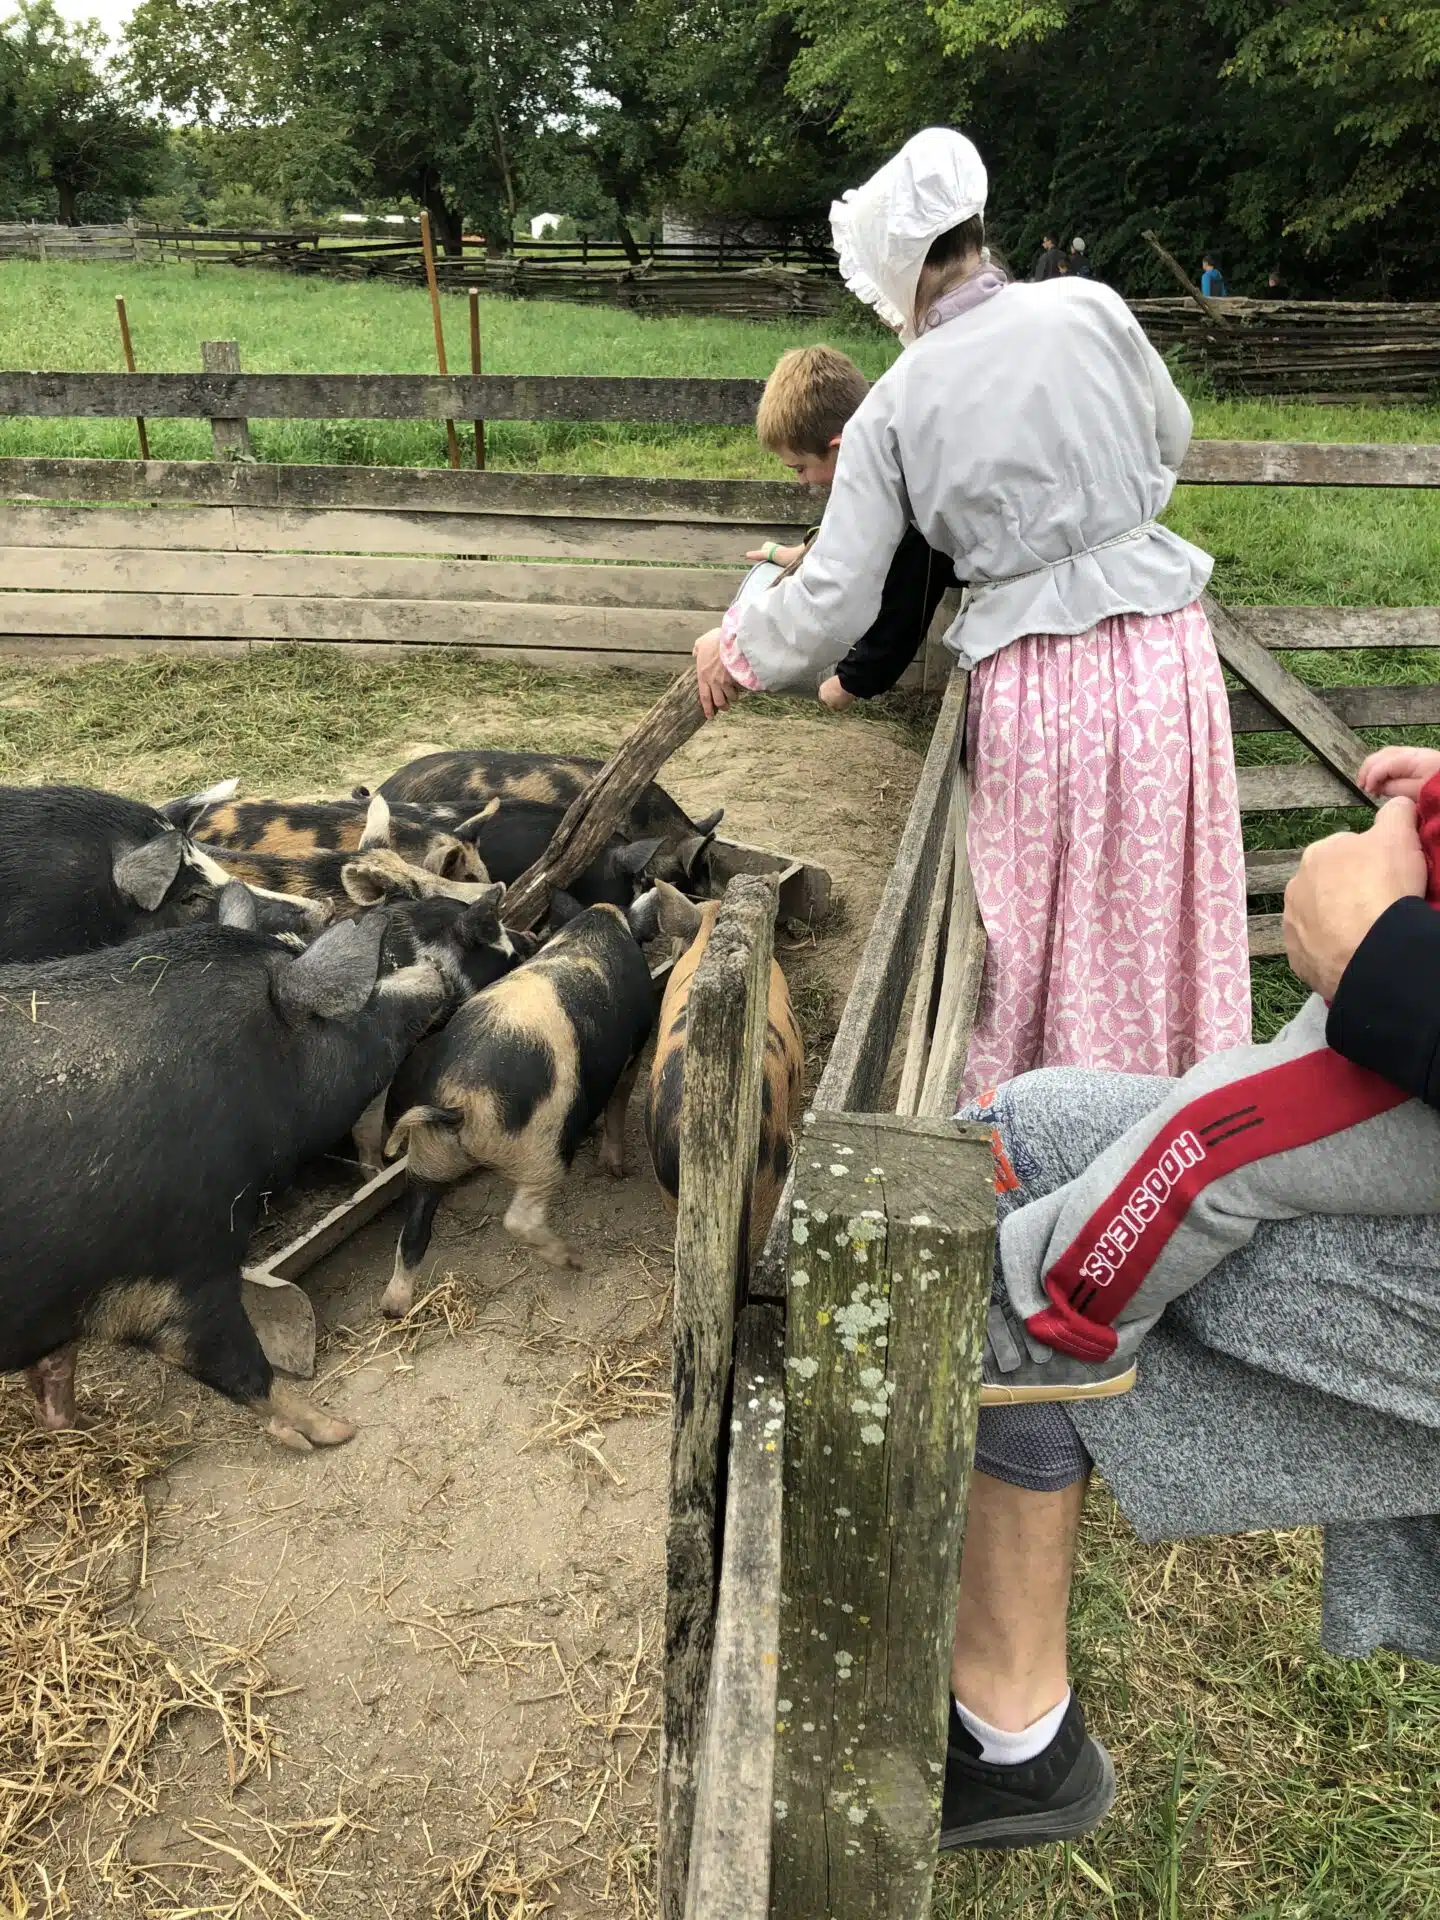 Feeding pigs at conner prairie